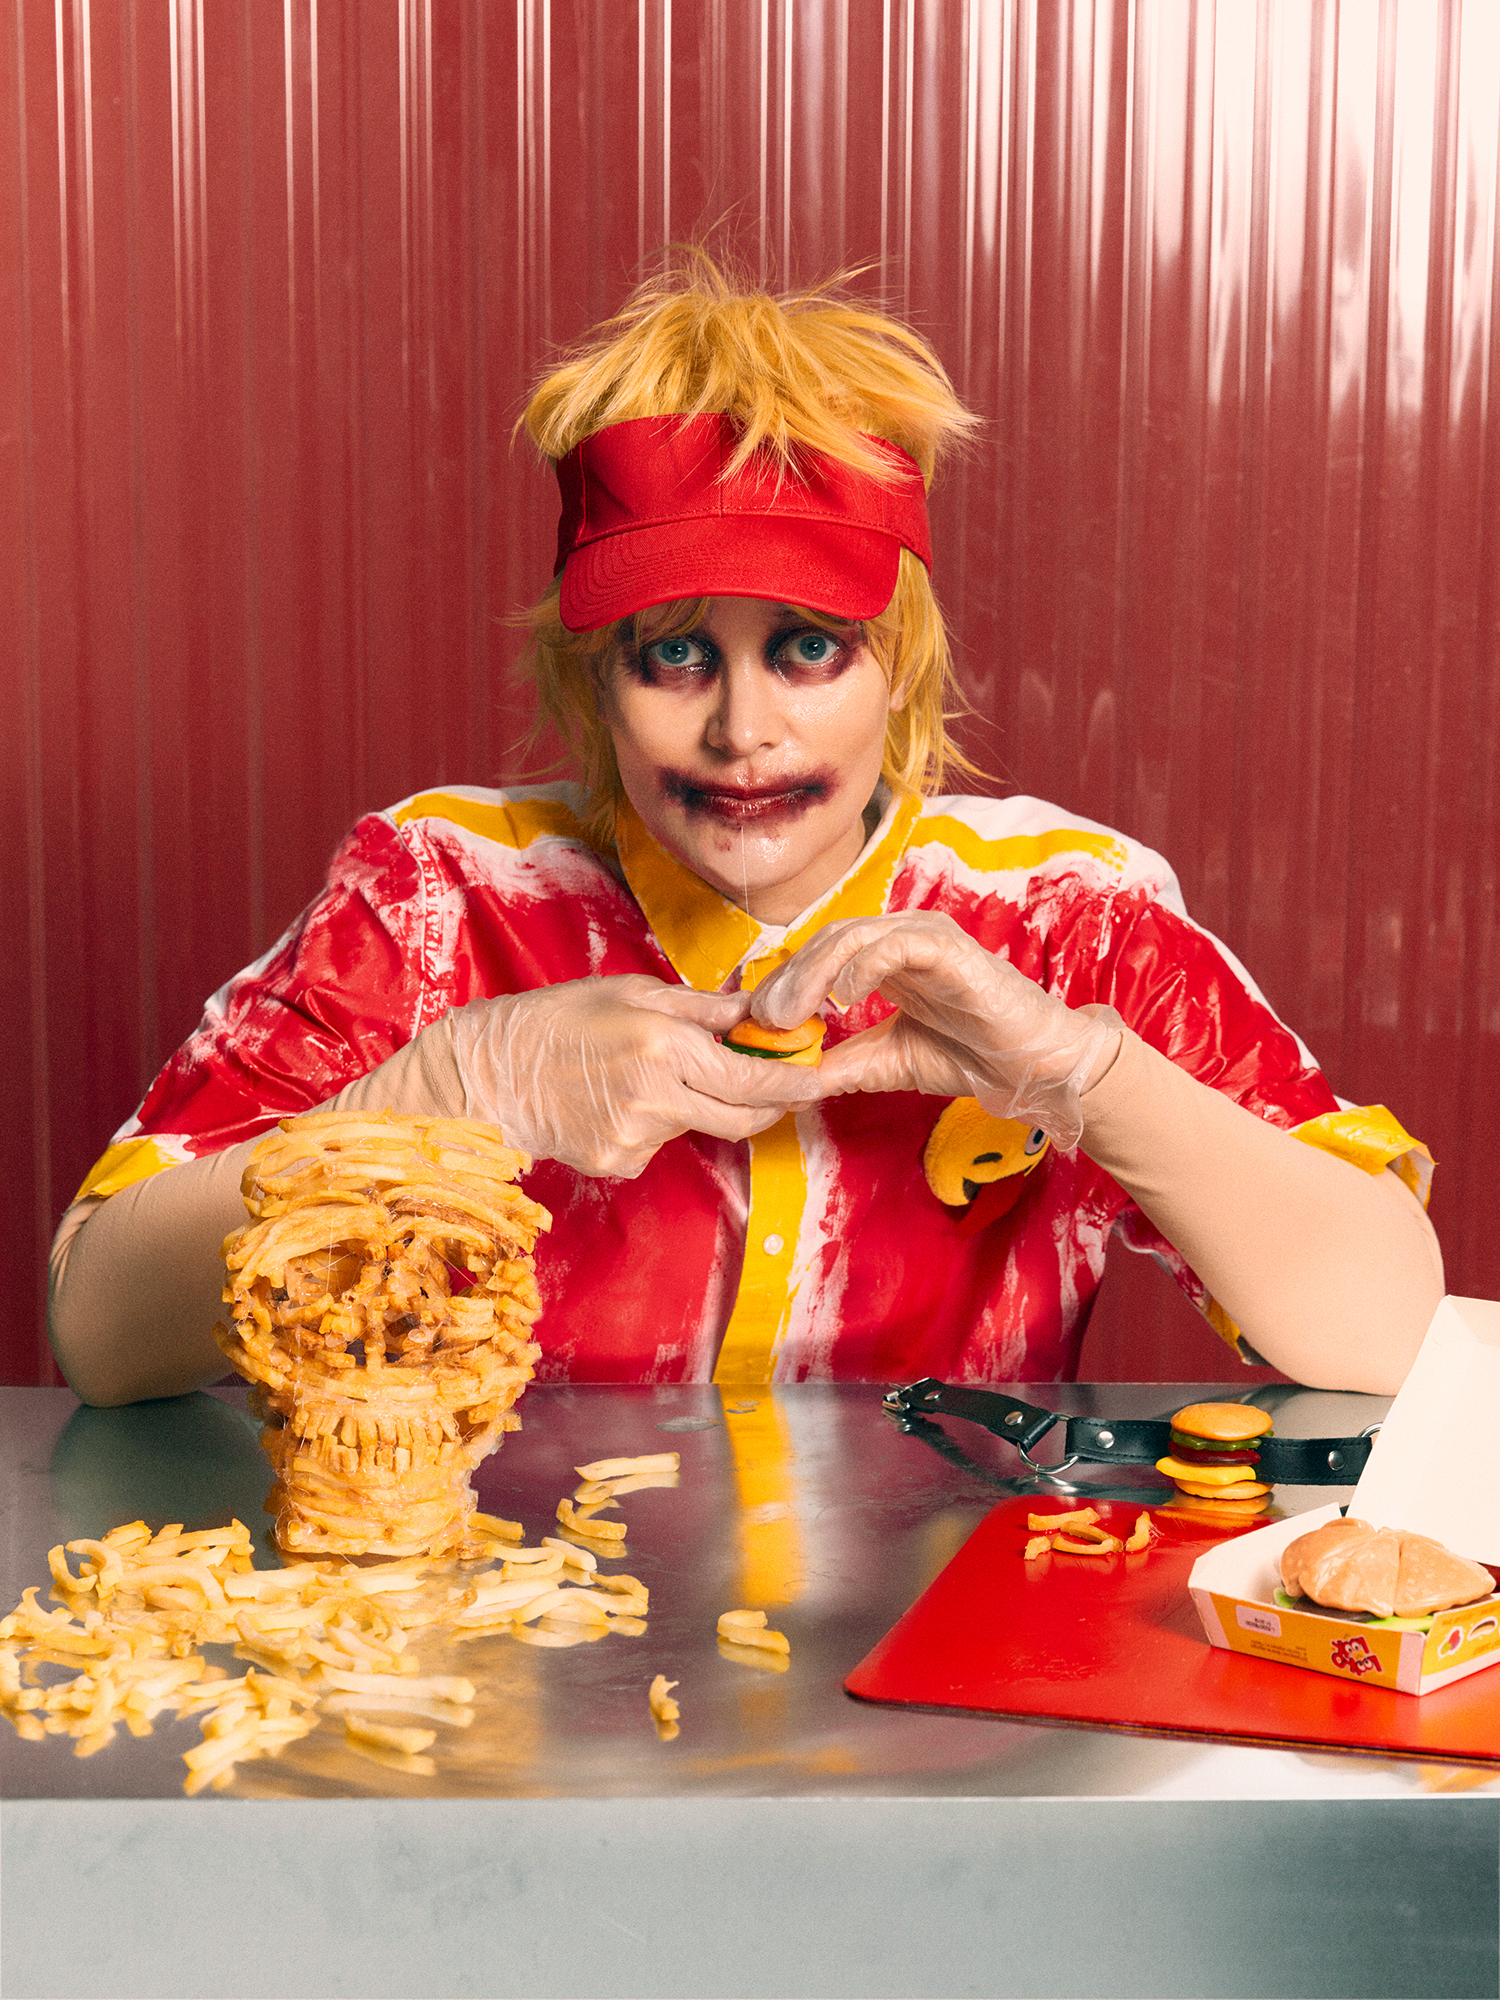 Karin Dreijer klädd i röd/gula kläder sittandes vid ett bord med en stor hög pommes frites framför sig. Hon har en minihamburgare i handen.